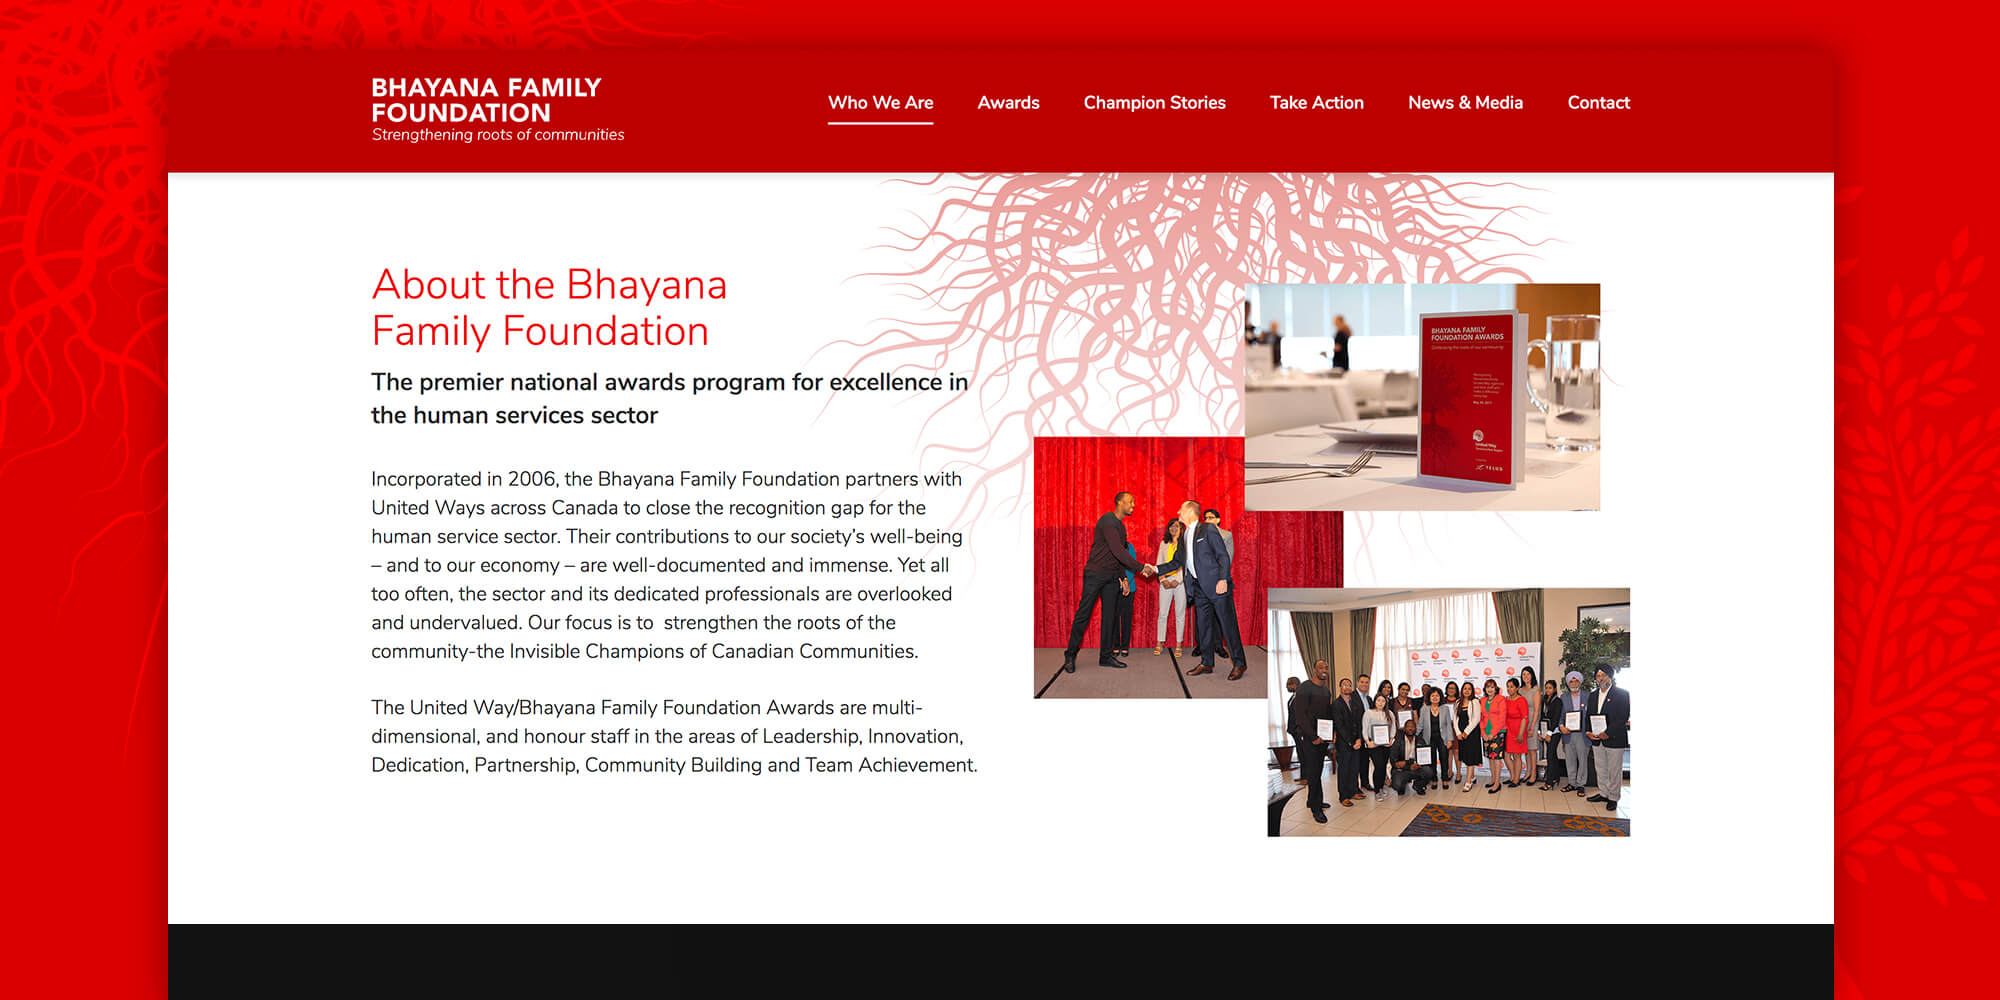 Bhayana Family Foundation